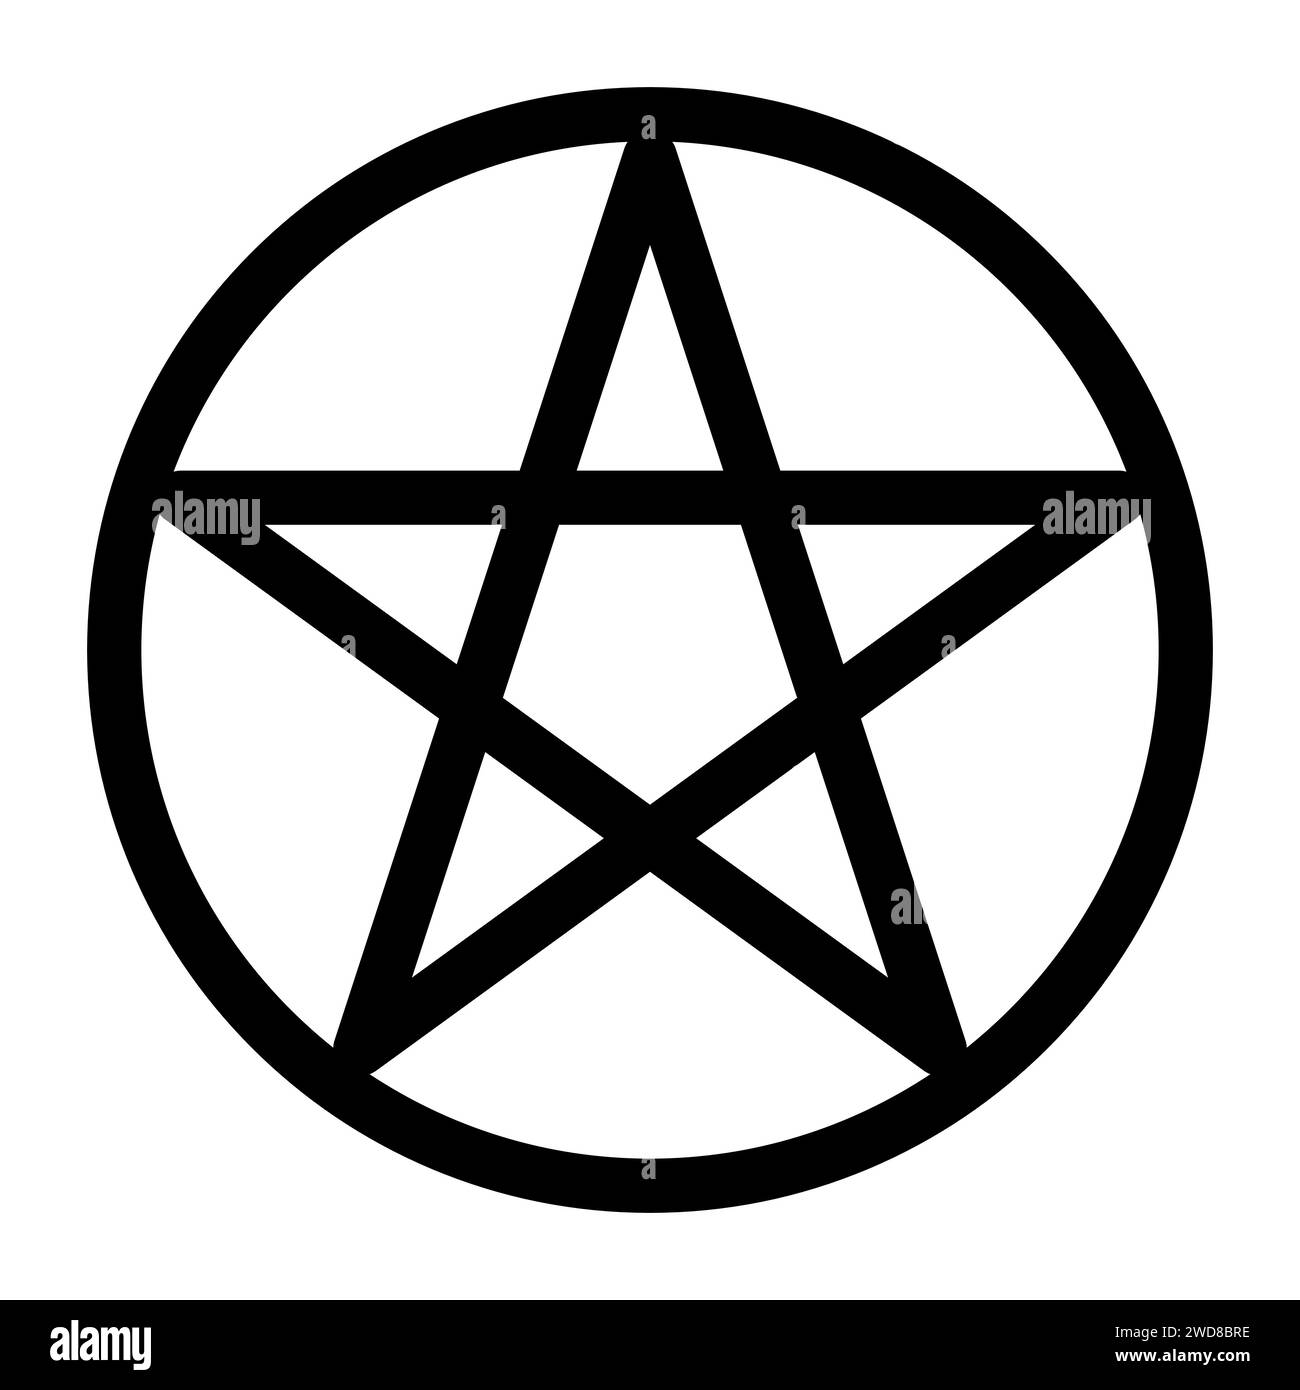 Pentagramm umschrieben durch einen Kreis. Fünfzackiges Sternschild. Magisches Symbol des Glaubens. Einfache flache schwarze Abbildung. Stock Vektor